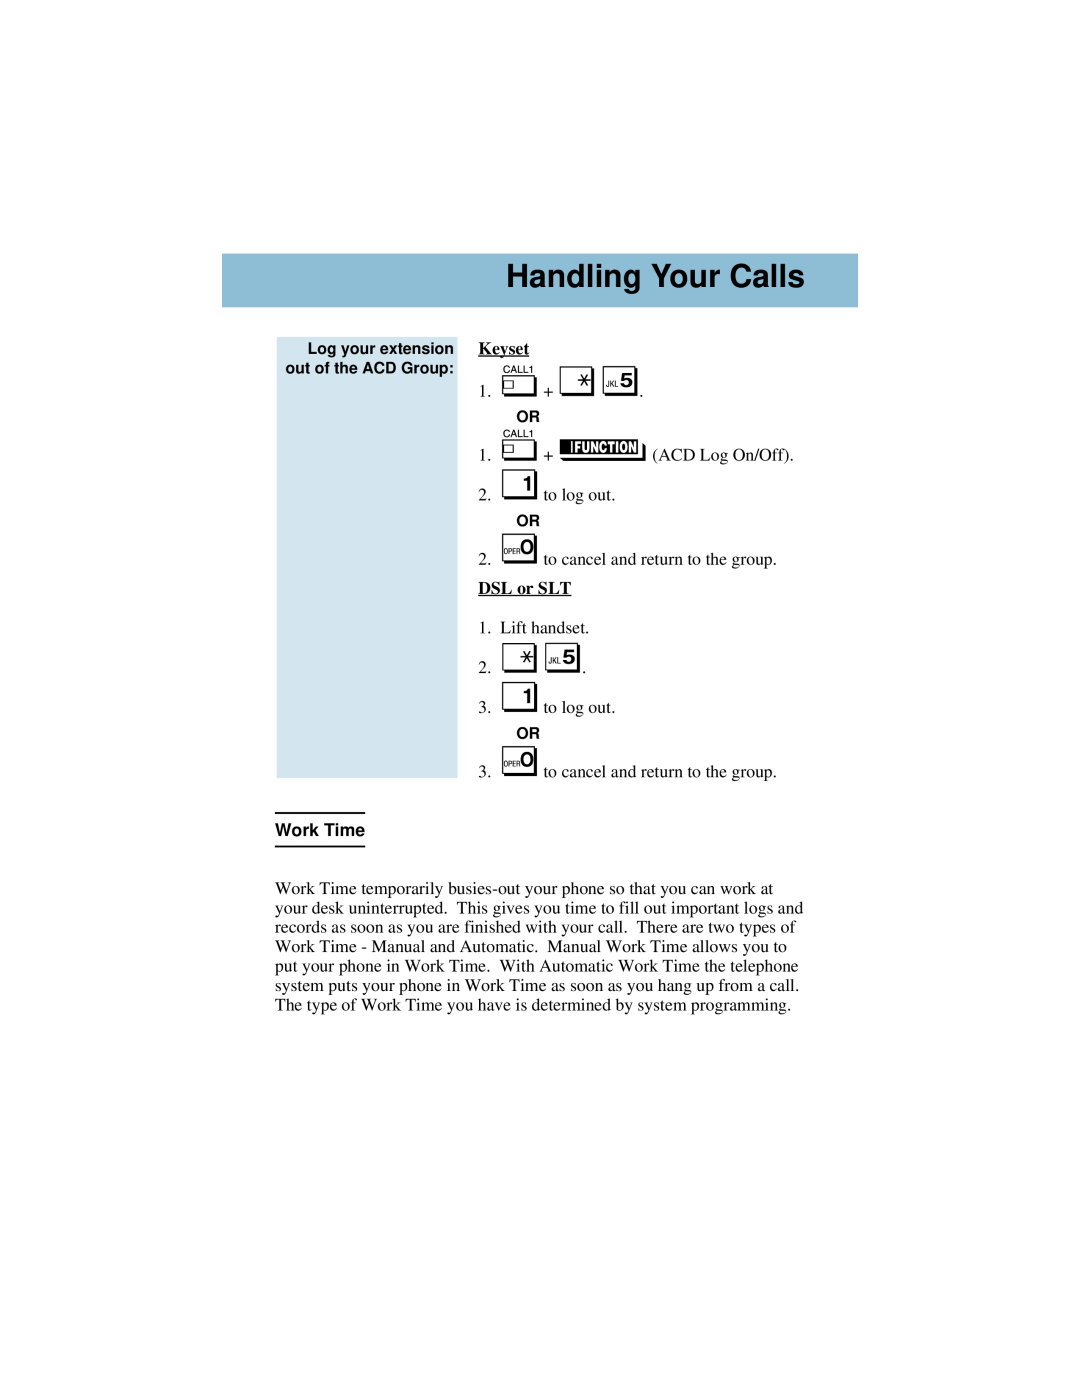 NEC i-Series manual Handling Your Calls, Work Time, Keyset, DSL or SLT 